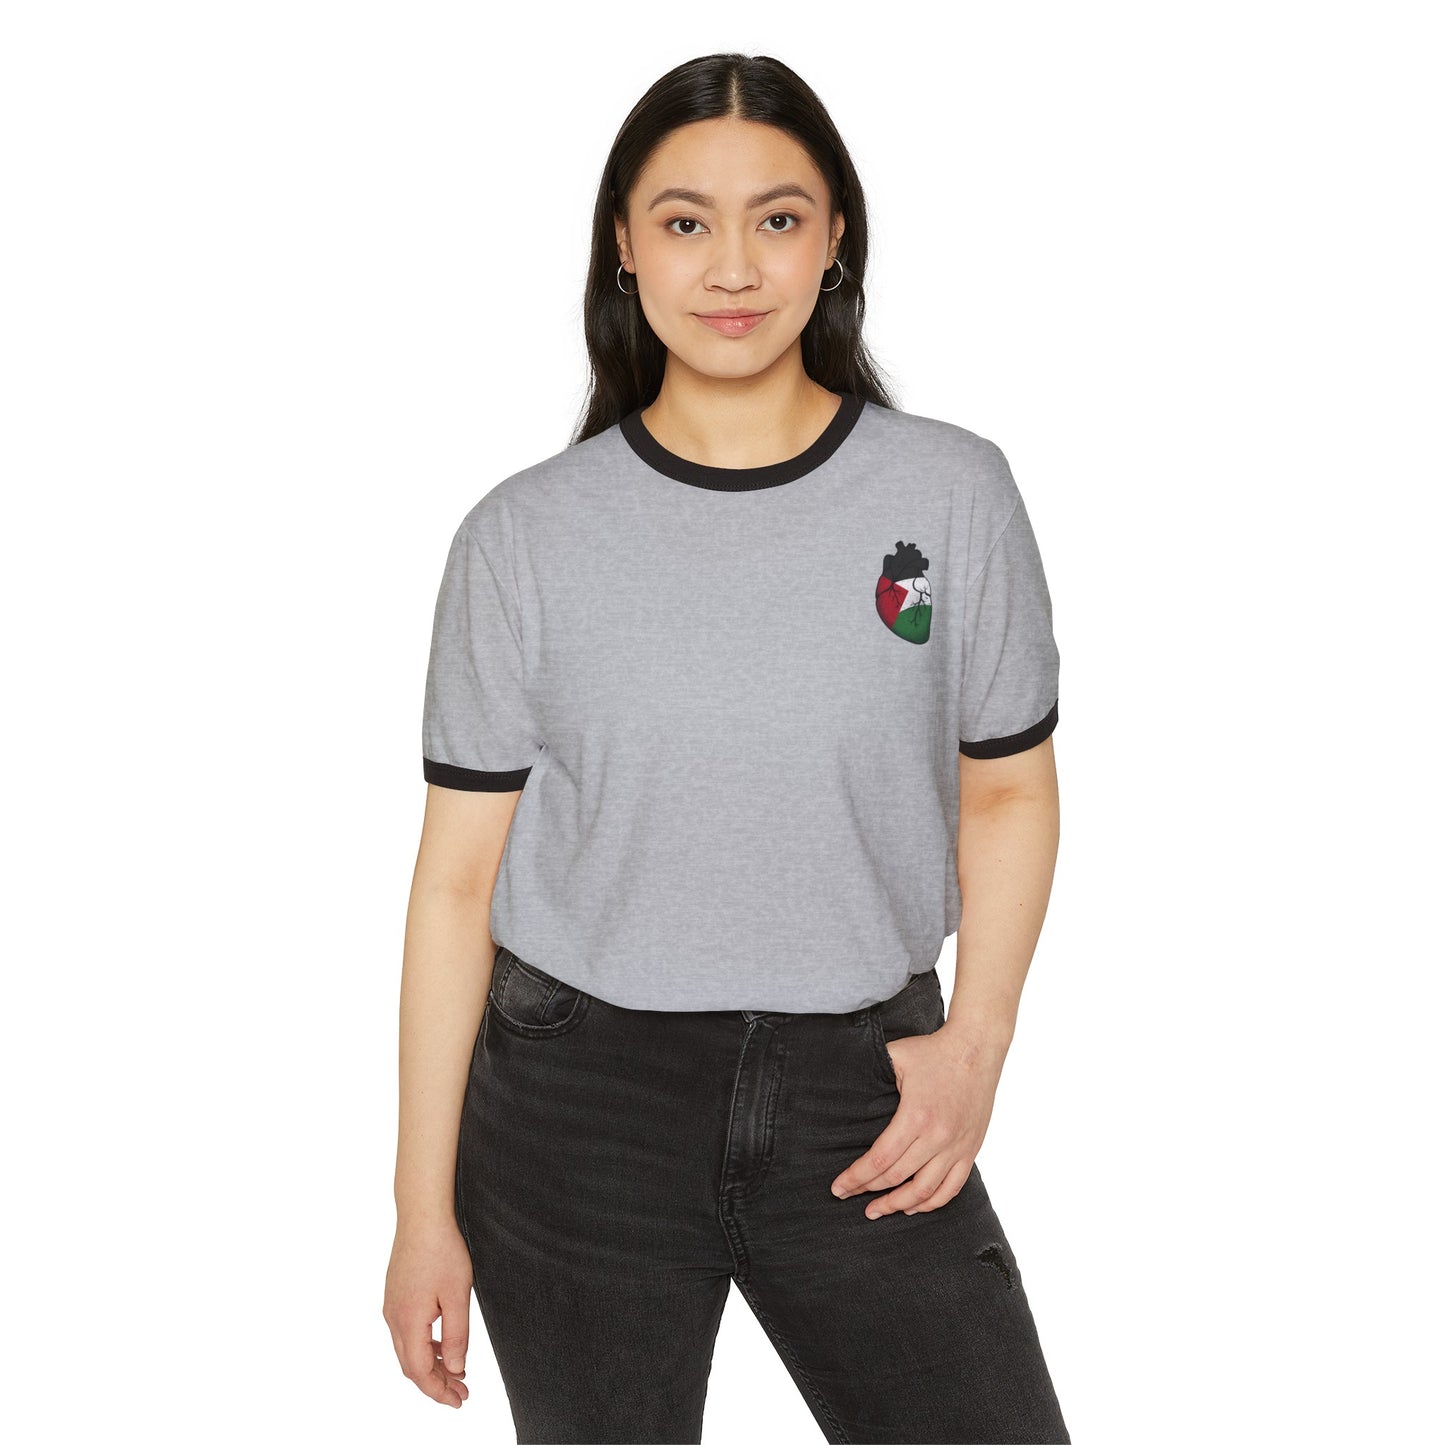 Copy of Unisex Cotton Ringer T-Shirt